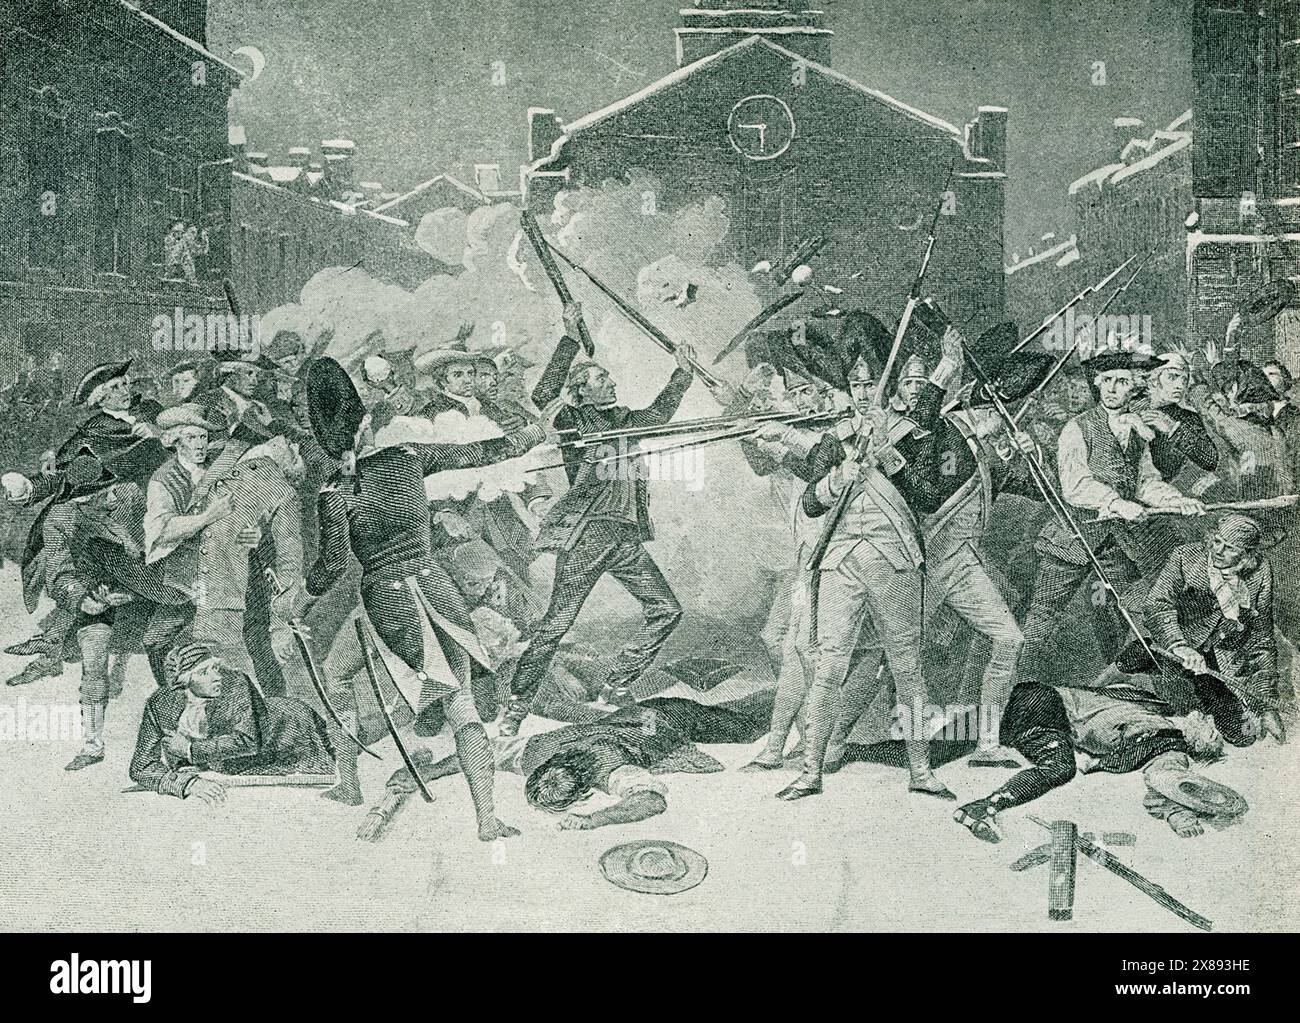 Il massacro di Boston fu un combattimento di strada avvenuto il 5 marzo 1770 tra una folla di patrioti, lanciando palle di neve, pietre e bastoni, e una squadra di soldati britannici. Diversi coloni Foto Stock